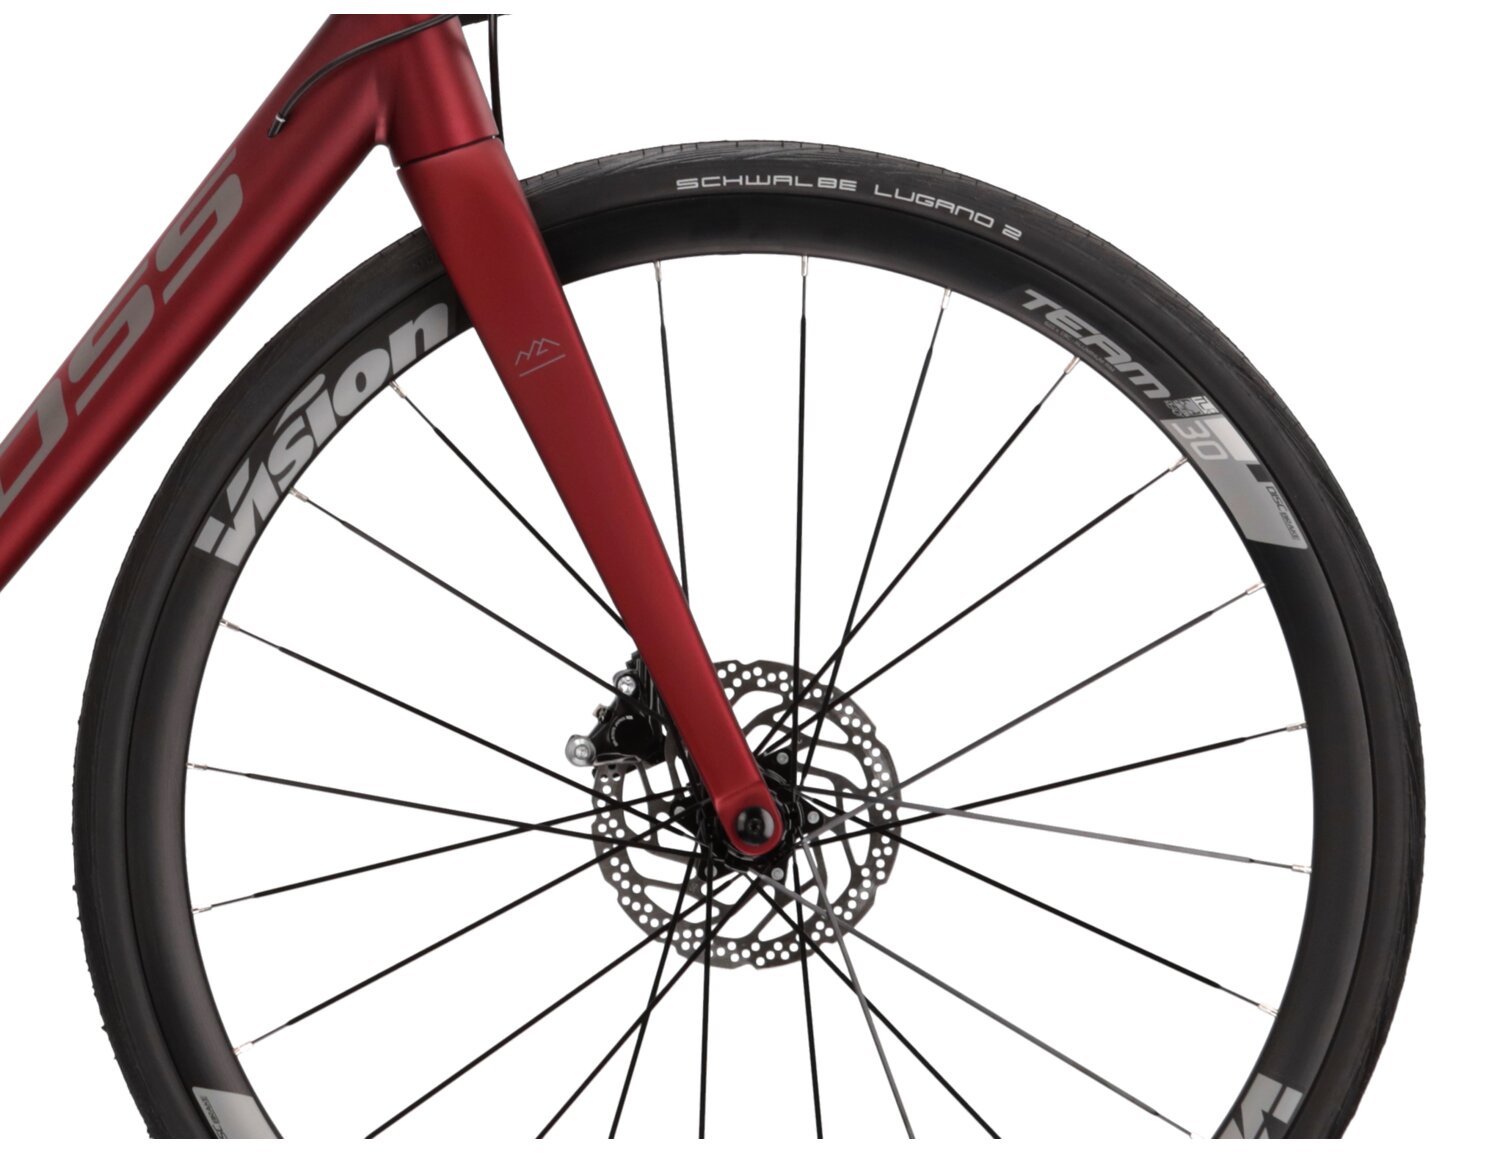  Aluminiowa rama, sztywny carbonowy widelec oraz opony Schwalbe w rowerze szosowym KROSS Vento DSC 5.0 